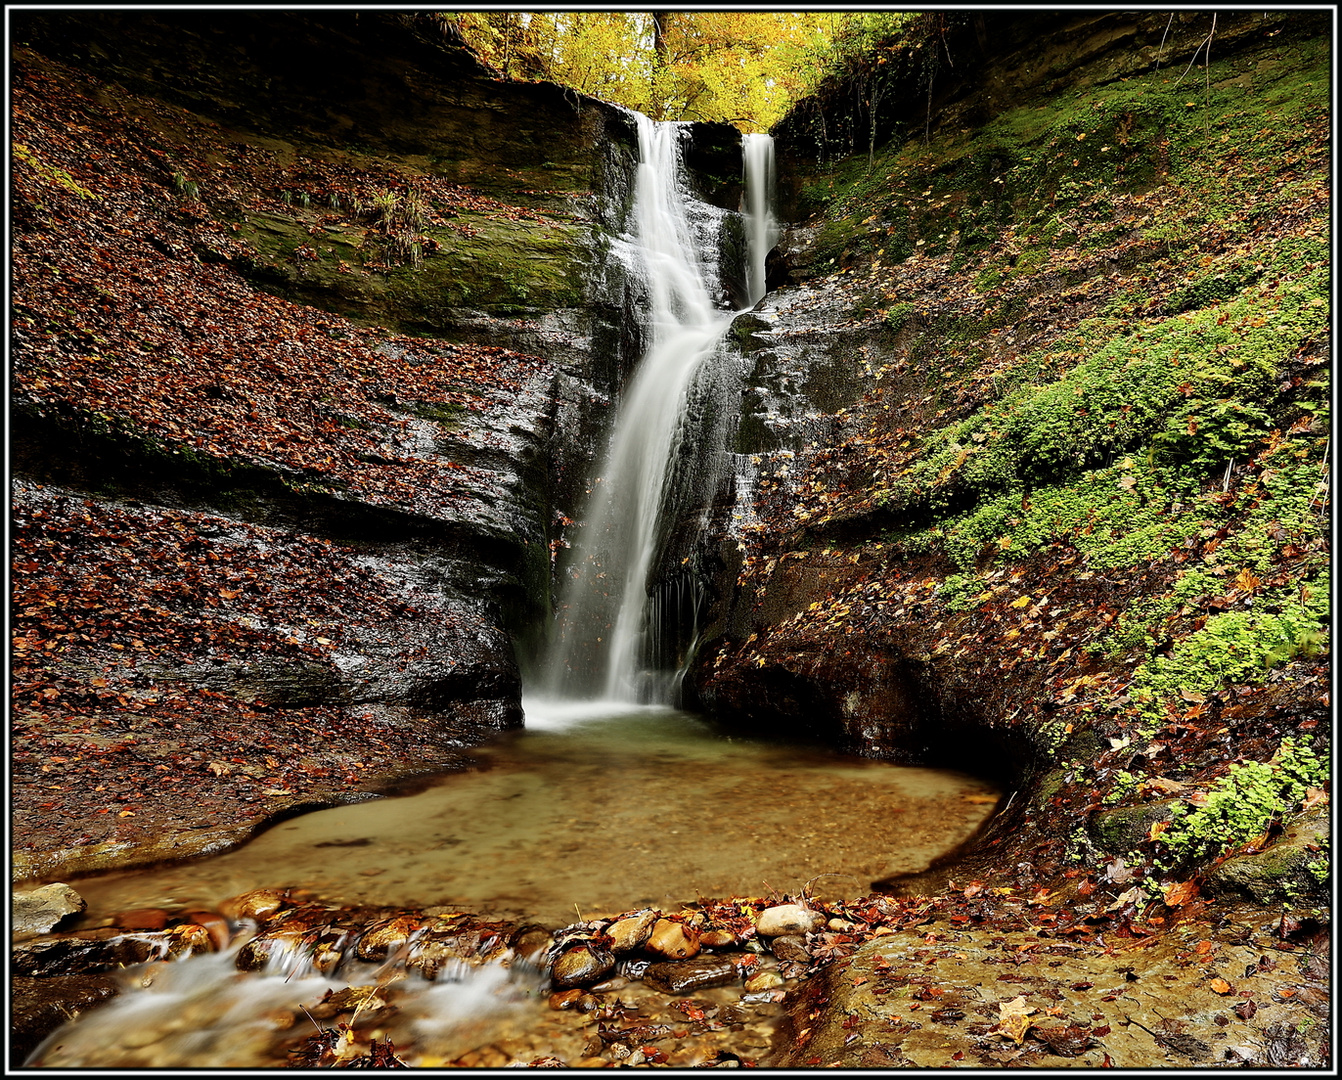 Herbststimmung am Wasserfall I